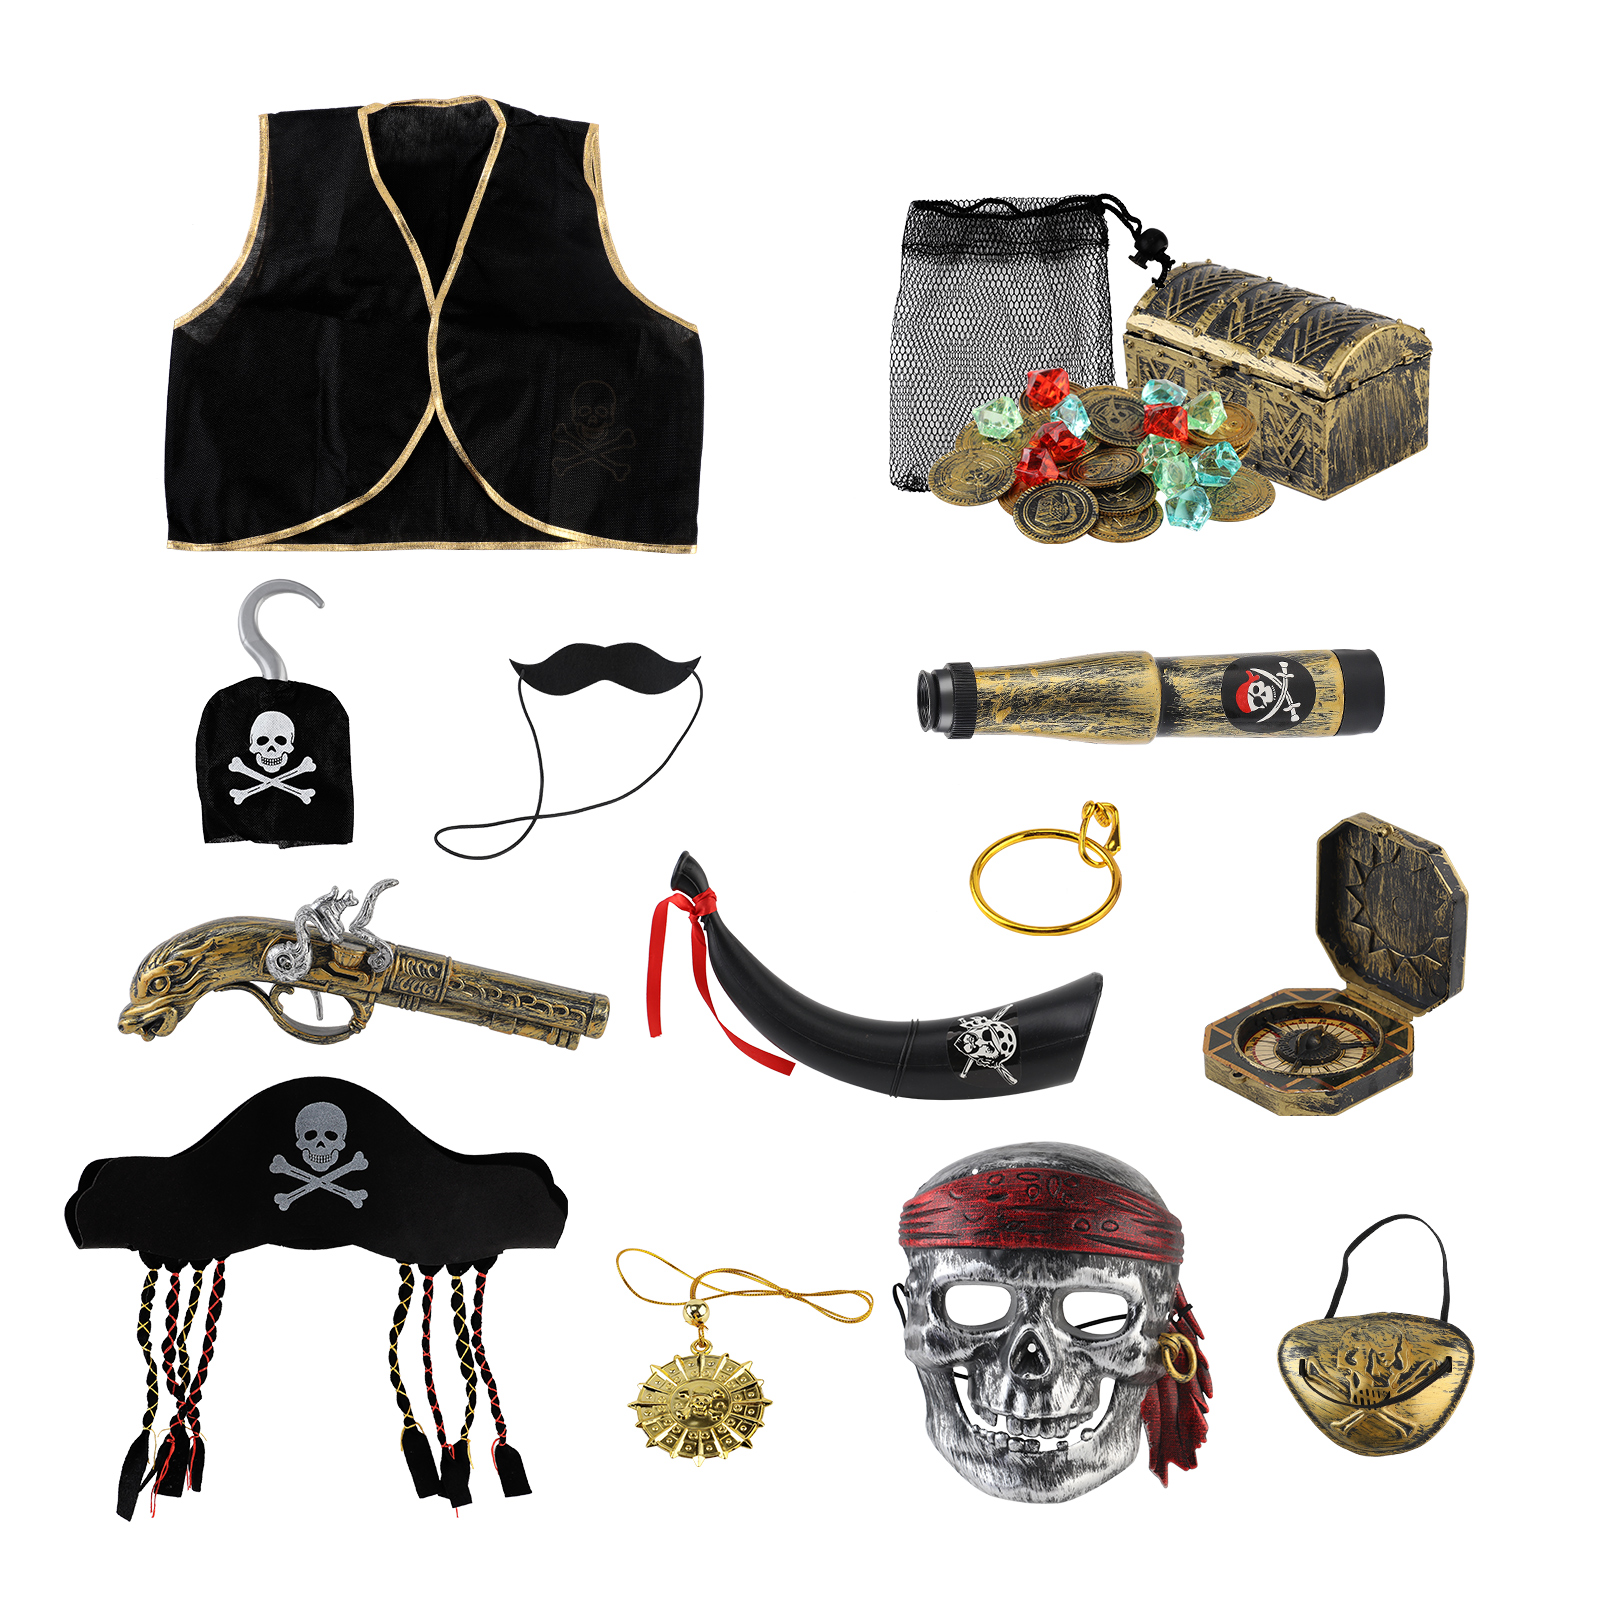 ကလေးများအတွက် Pirate Treasure Play Set၊ Pirate Role-Play အရုပ်များ၊ Pirate Costume ကလေးများ ဆက်စပ်ပစ္စည်းများ